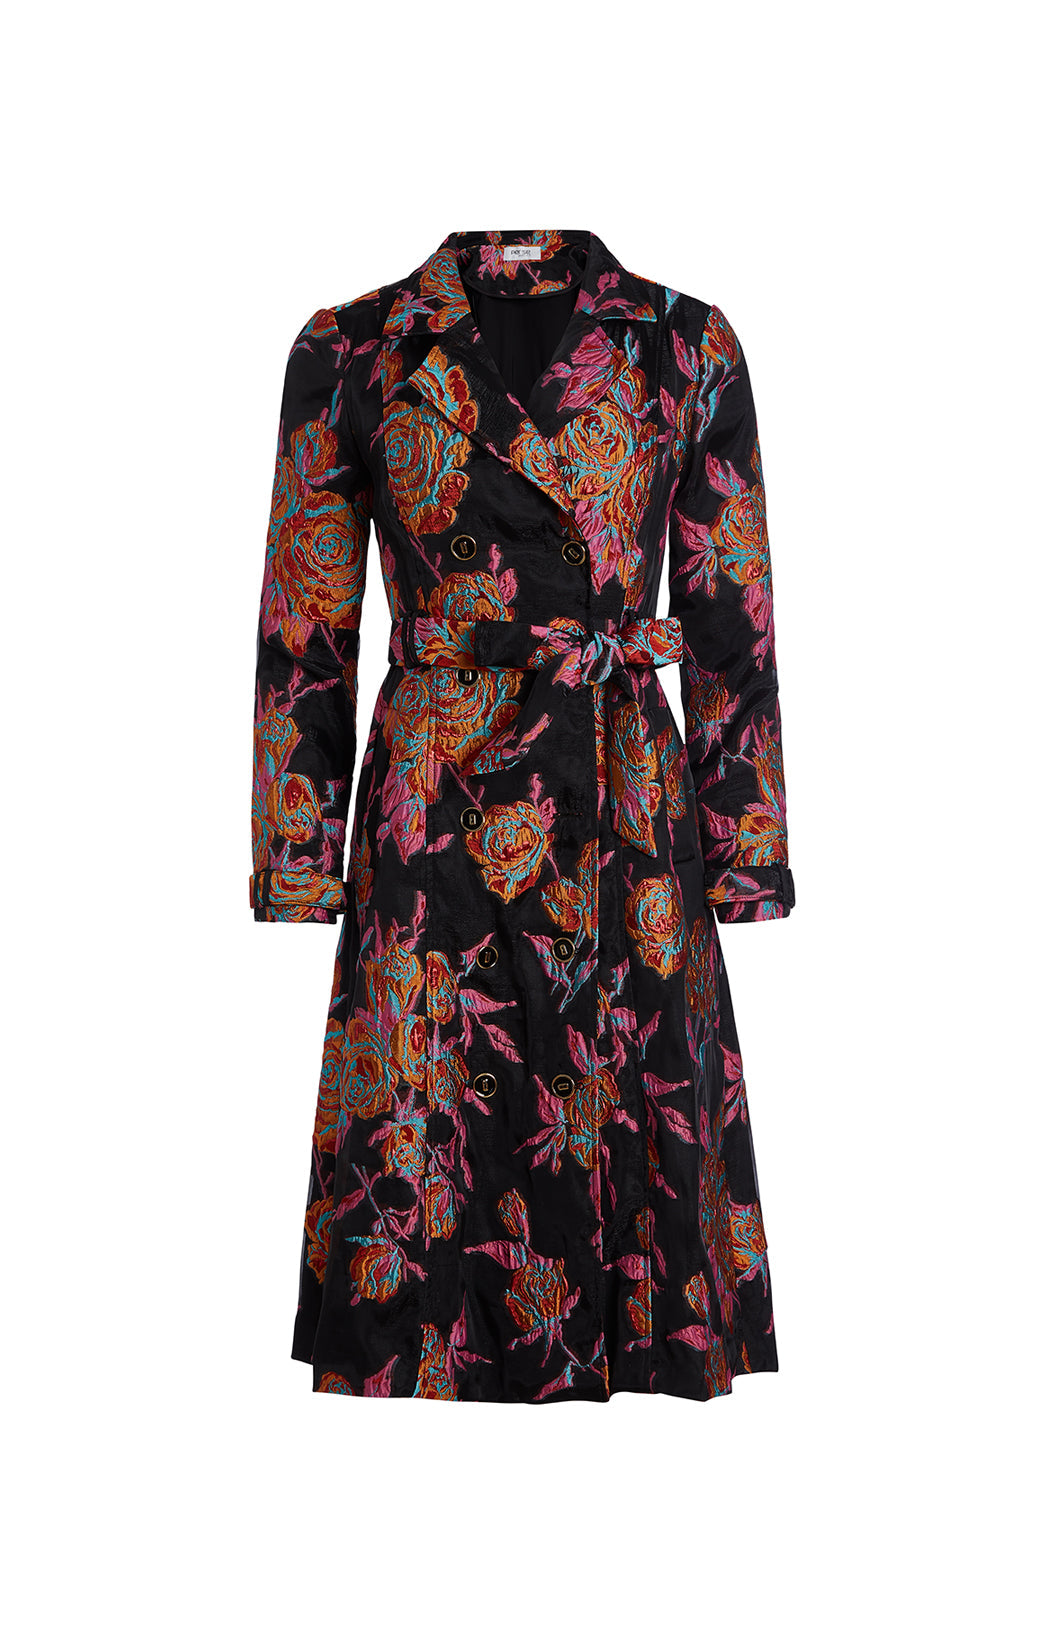 Palm Court - Knit Floral Jacquard Dress -  Product Image